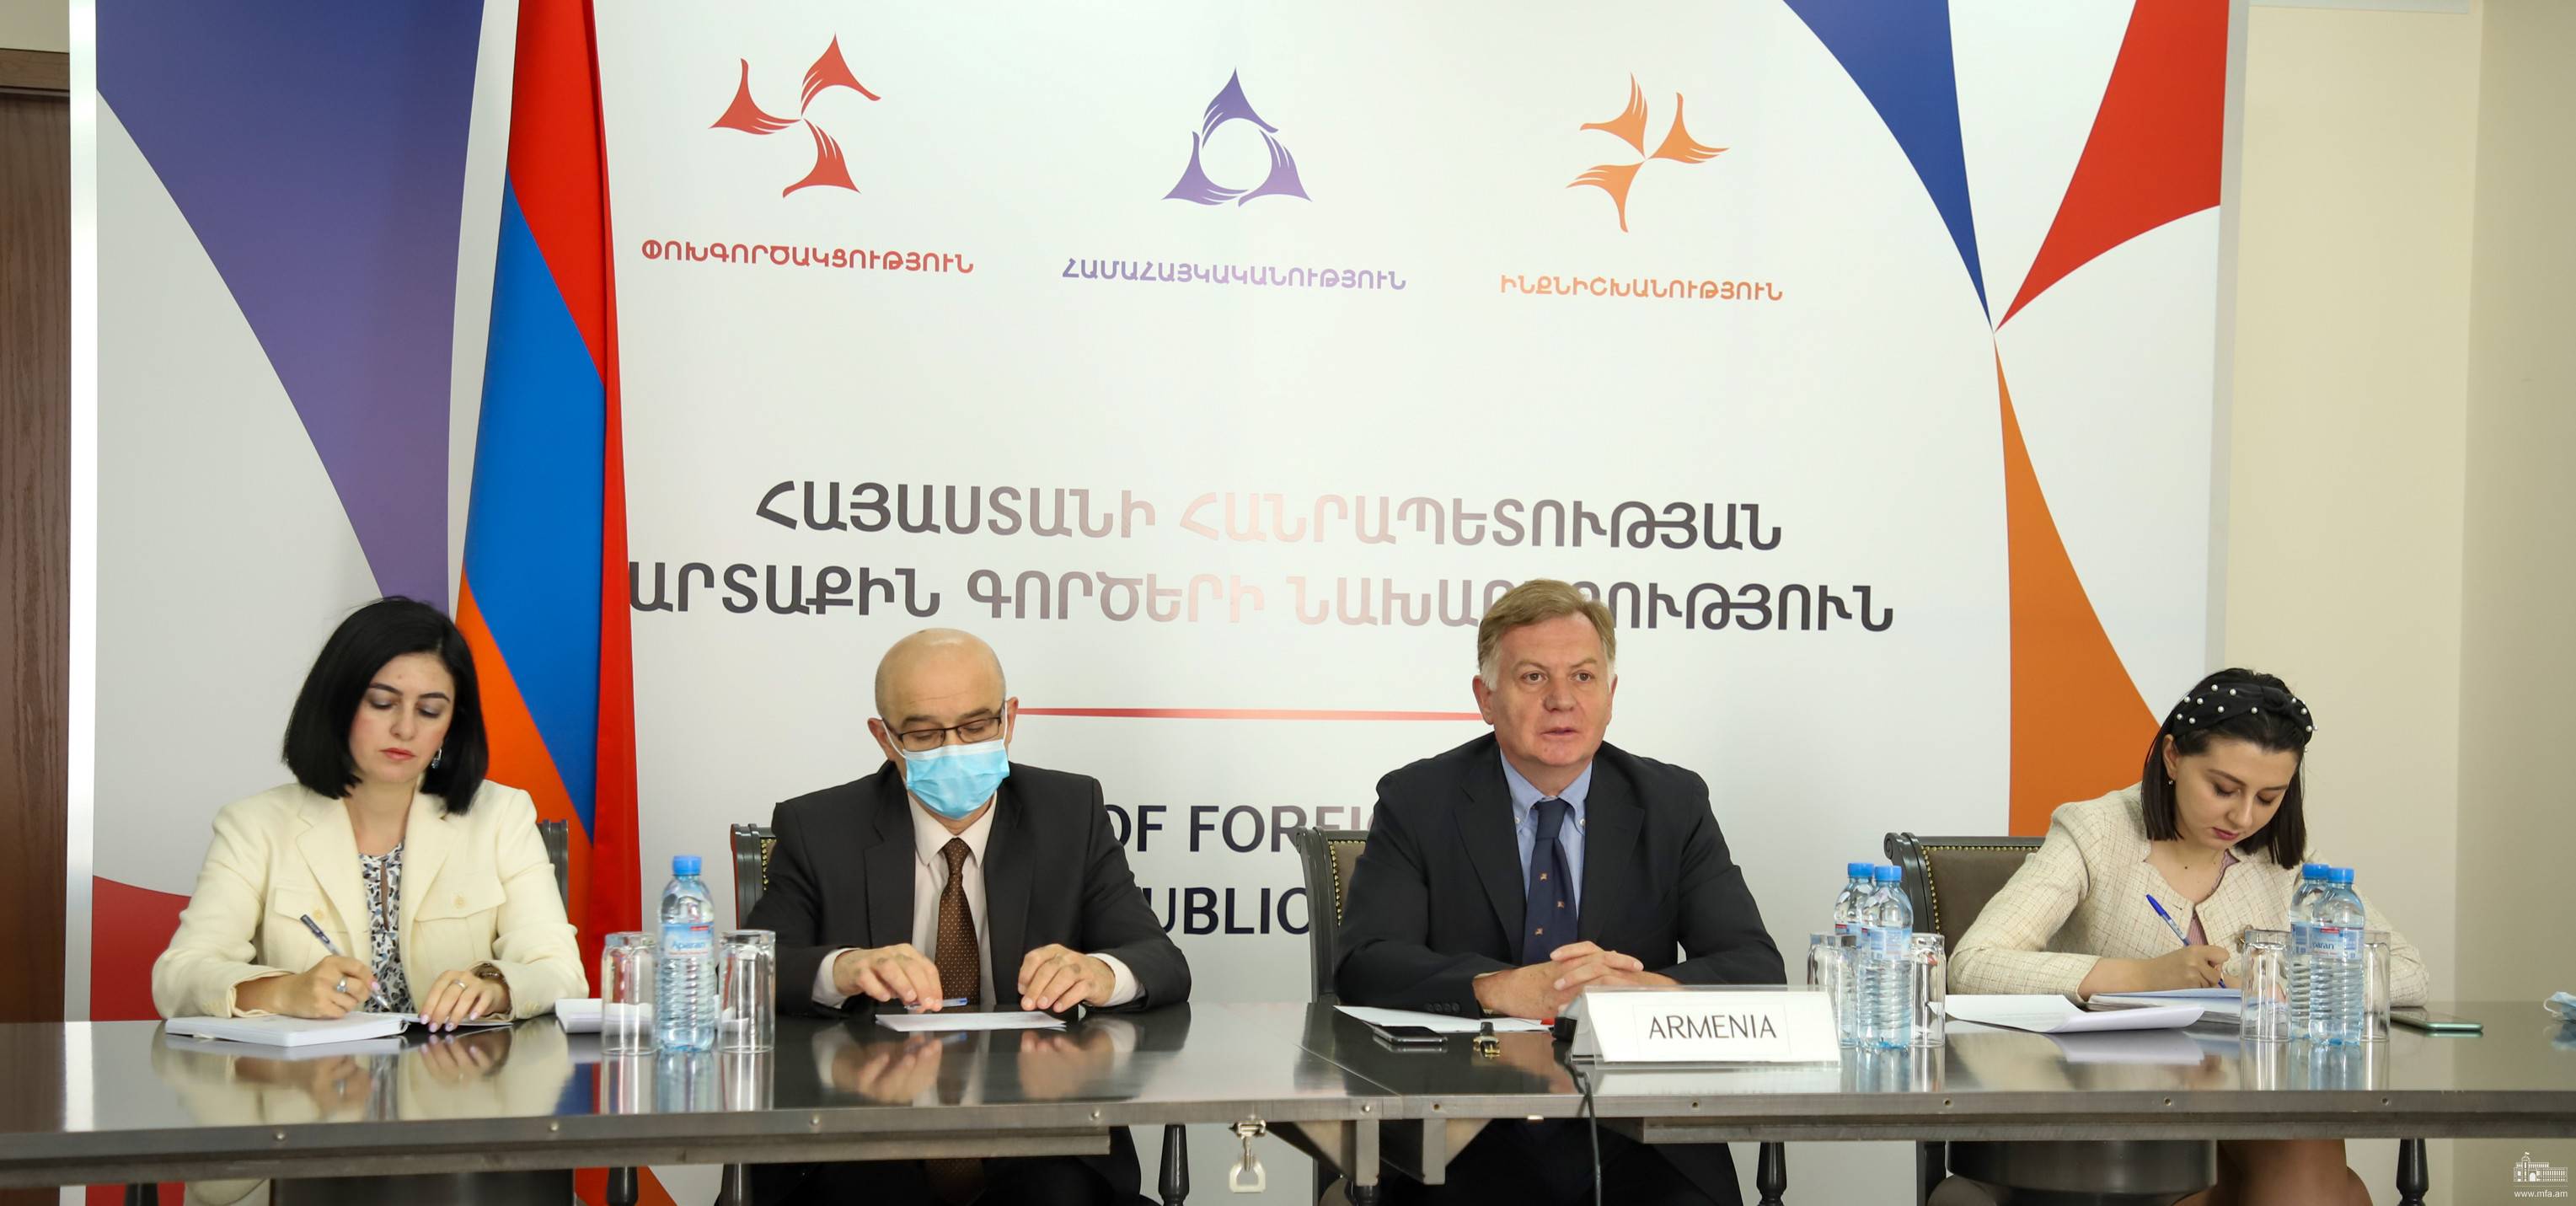 Քաղաքական խորհրդակցություններ Հայաստանի և Սլովենիայի արտաքին գործերի նախարարությունների միջև